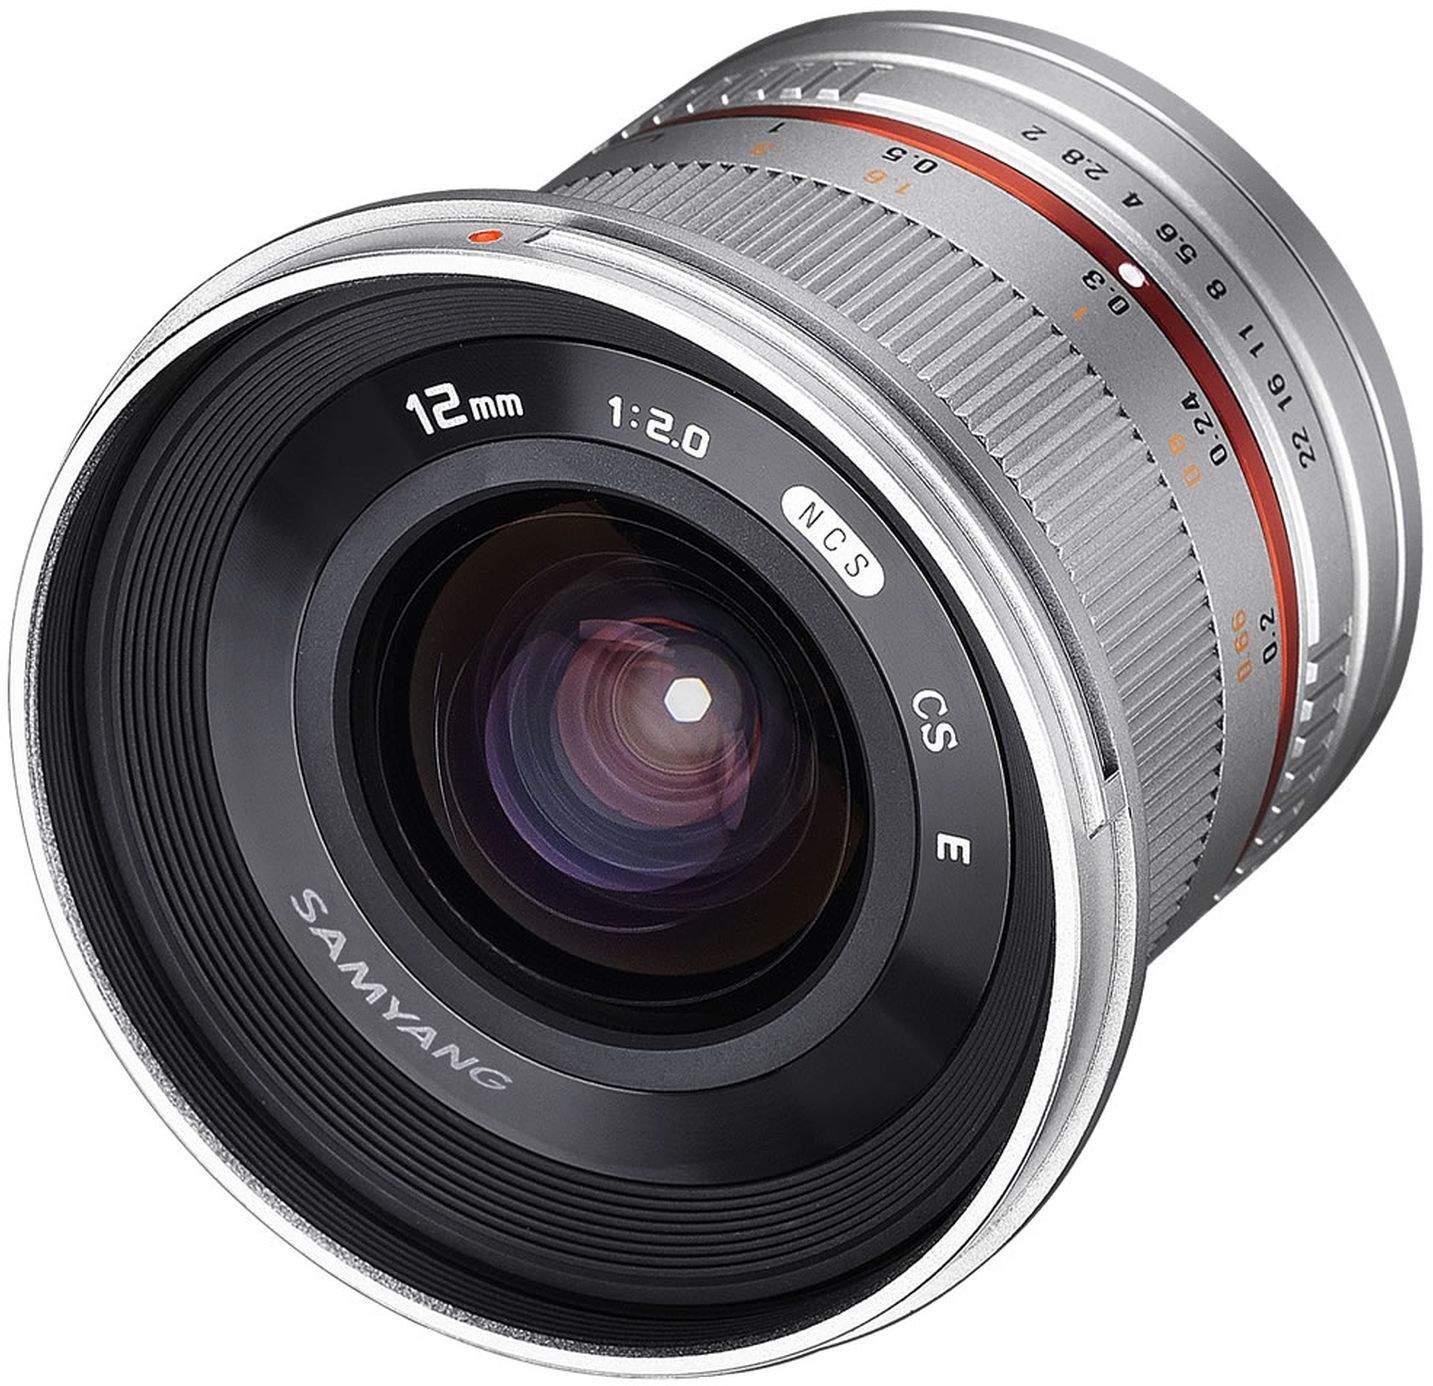 Samyang 12mm F2.0 NCS CS Fuji X Camera Lens - Silver main image